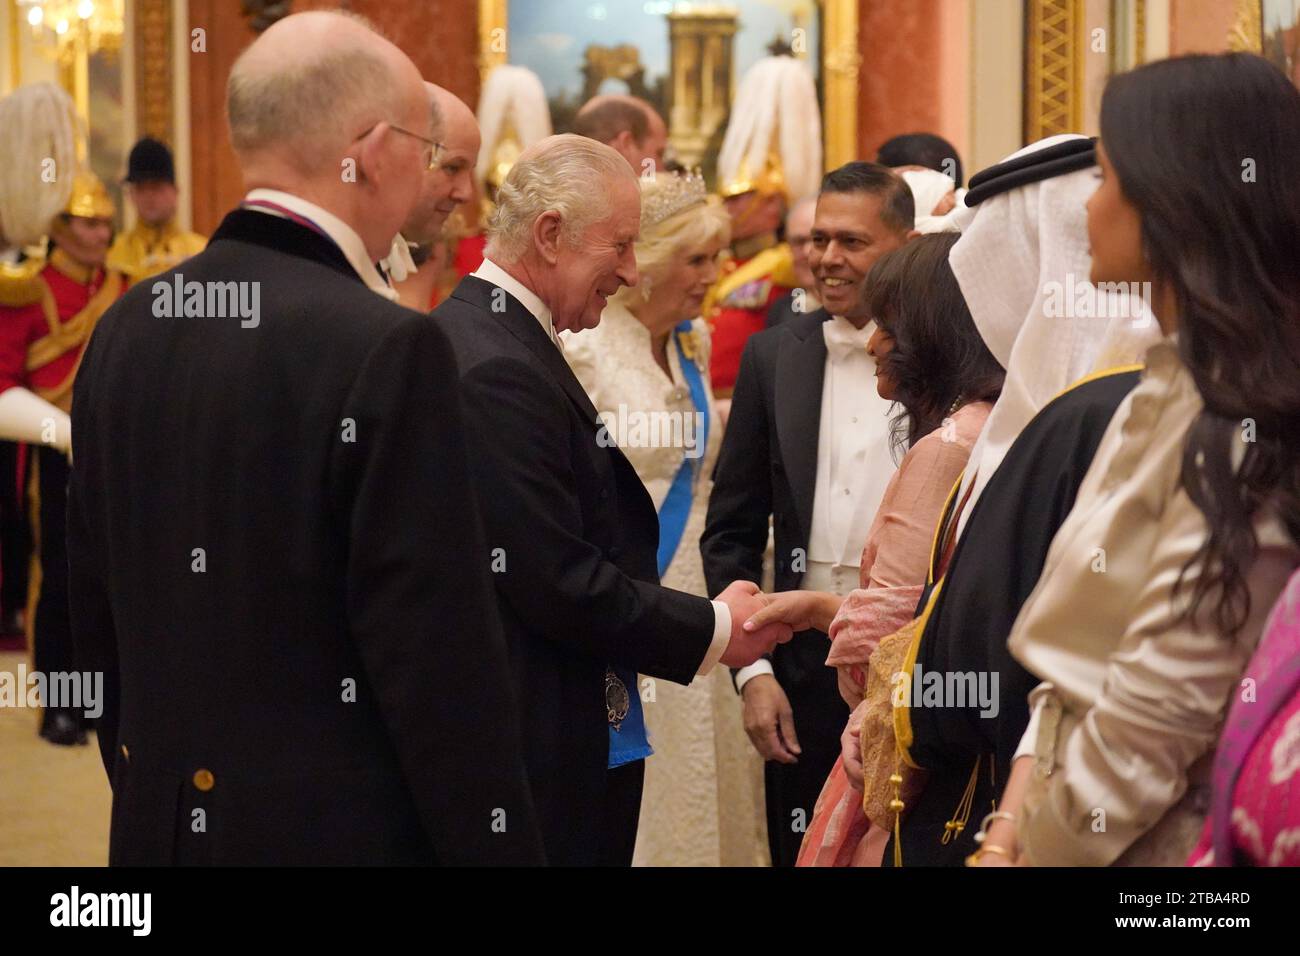 König Karl III. Und Königin Camilla bei einem abendlichen Empfang für Mitglieder des Diplomatischen Korps im Buckingham Palace in London. Bilddatum: Dienstag, 5. Dezember 2023. Stockfoto